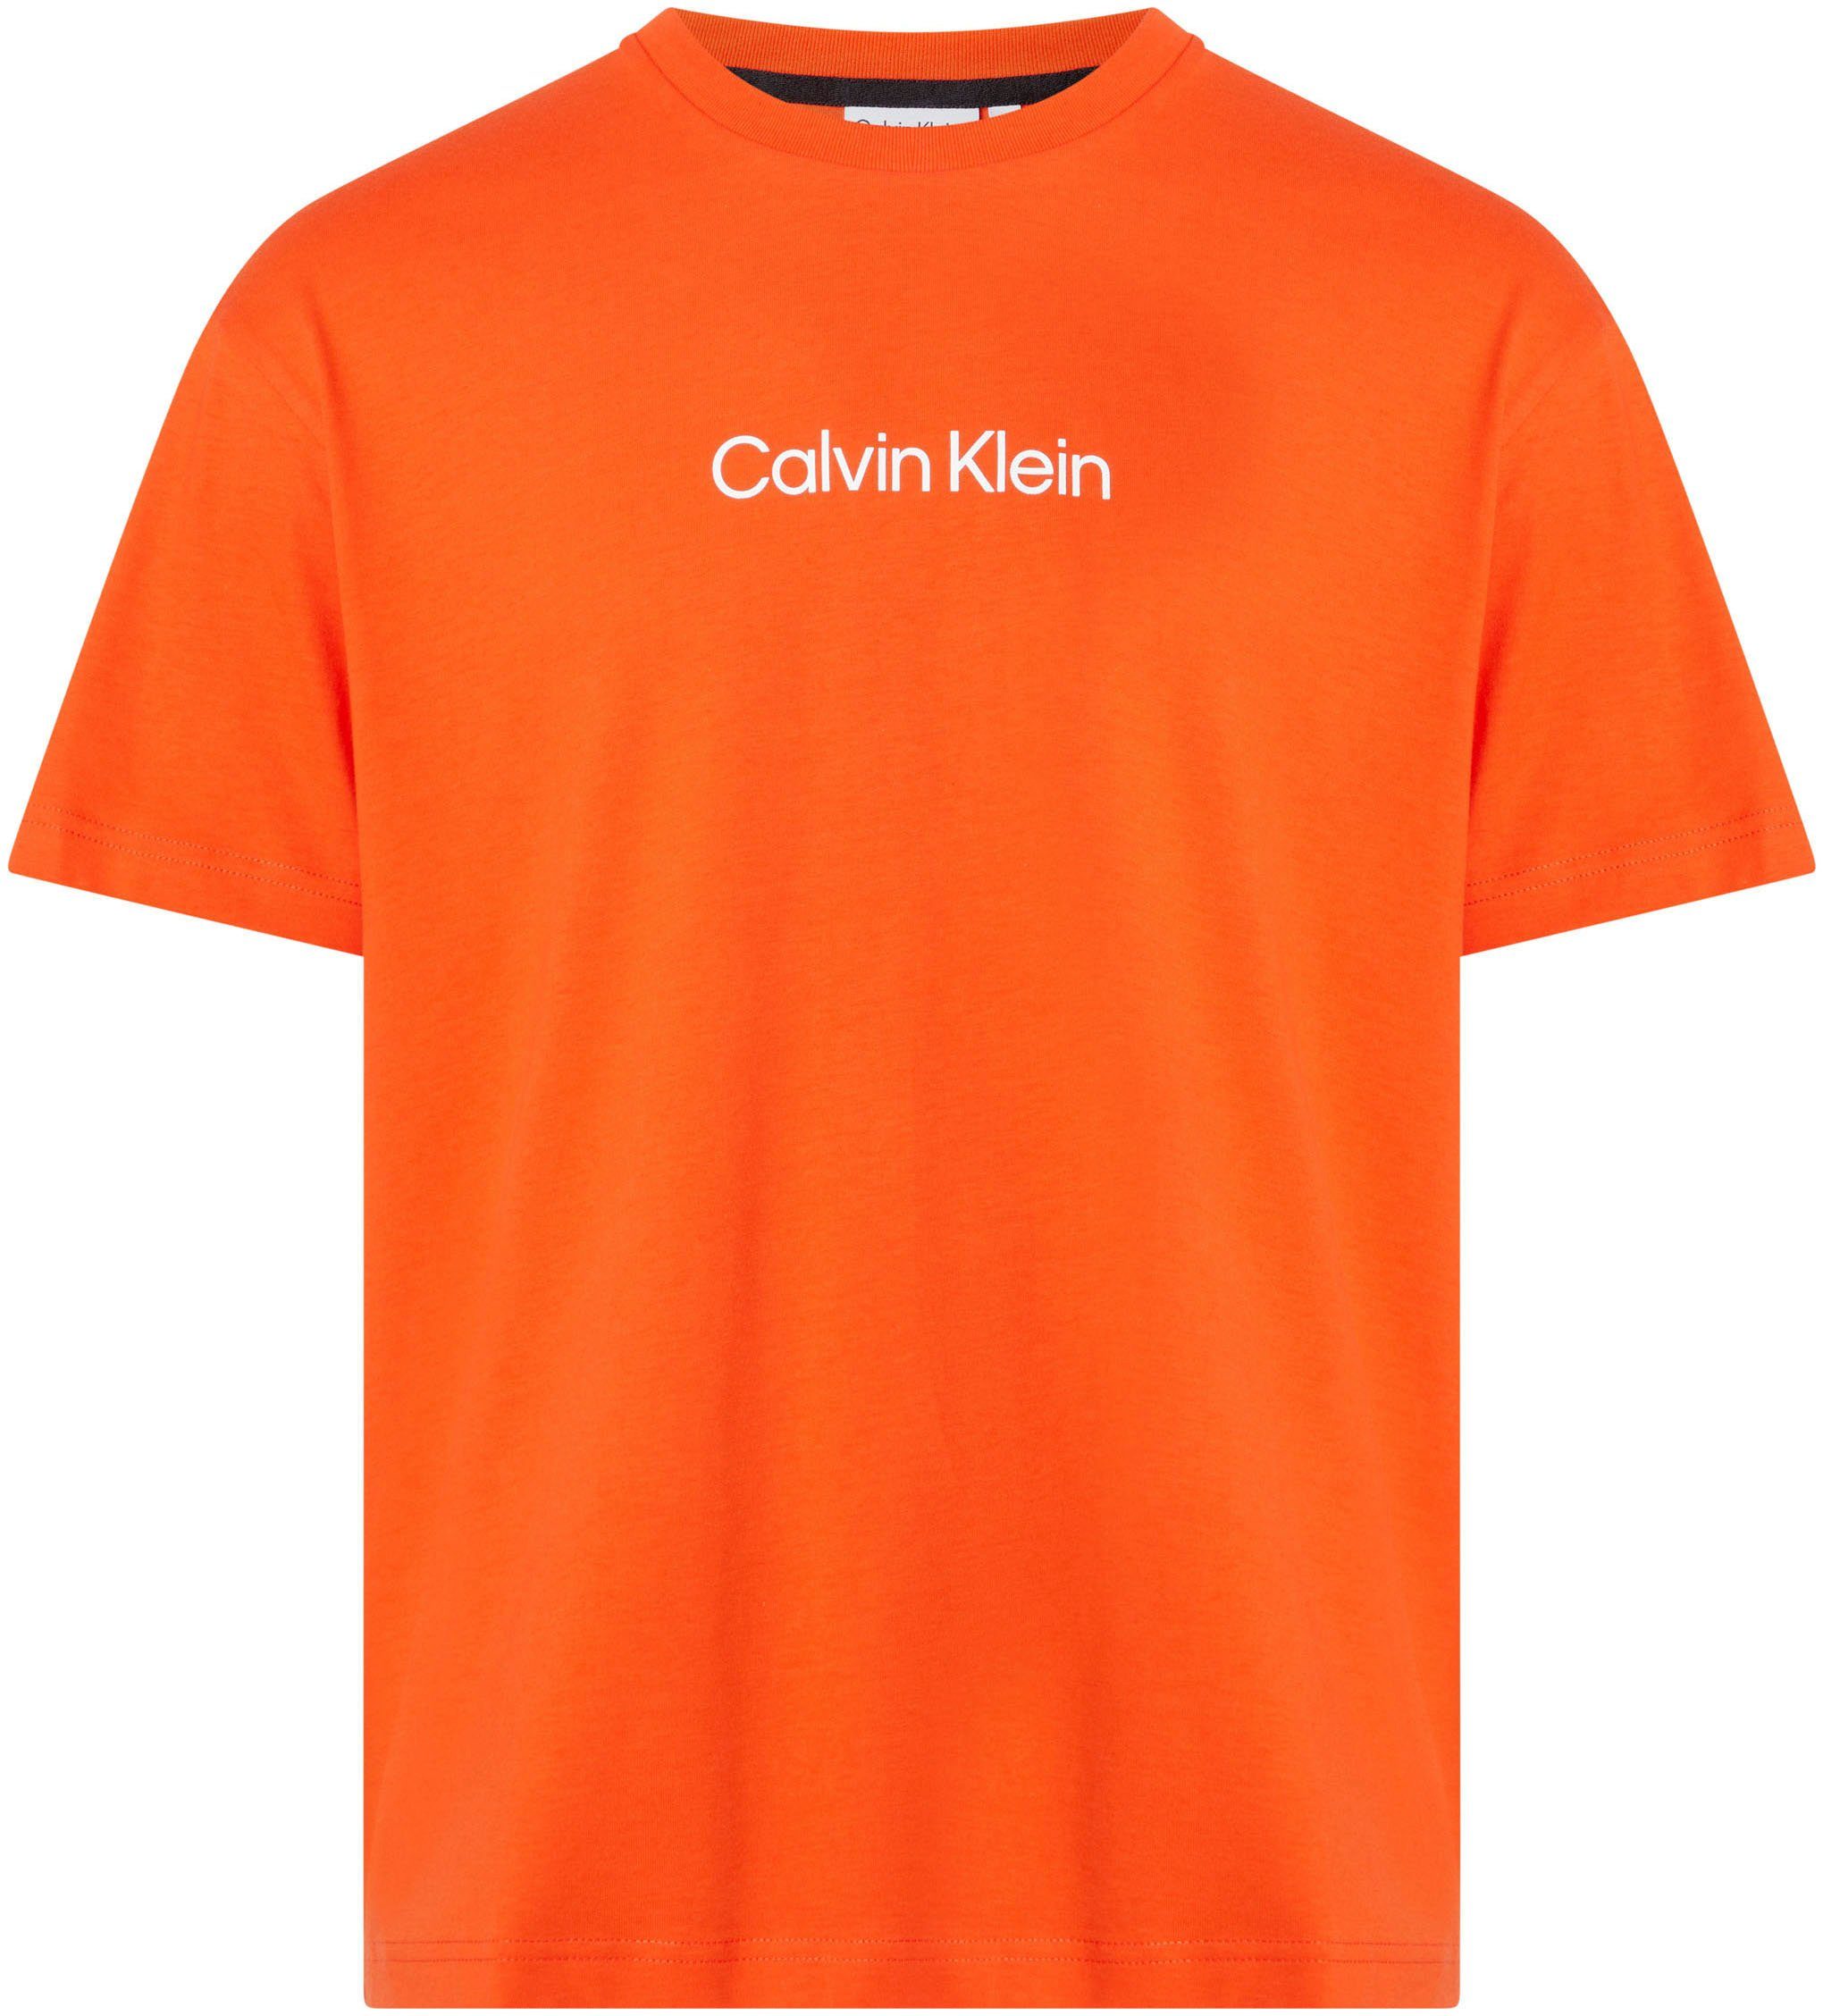 Calvin Klein T-Shirt HERO T-SHIRT mit Markenlabel aufgedrucktem COMFORT Spicy LOGO Orange